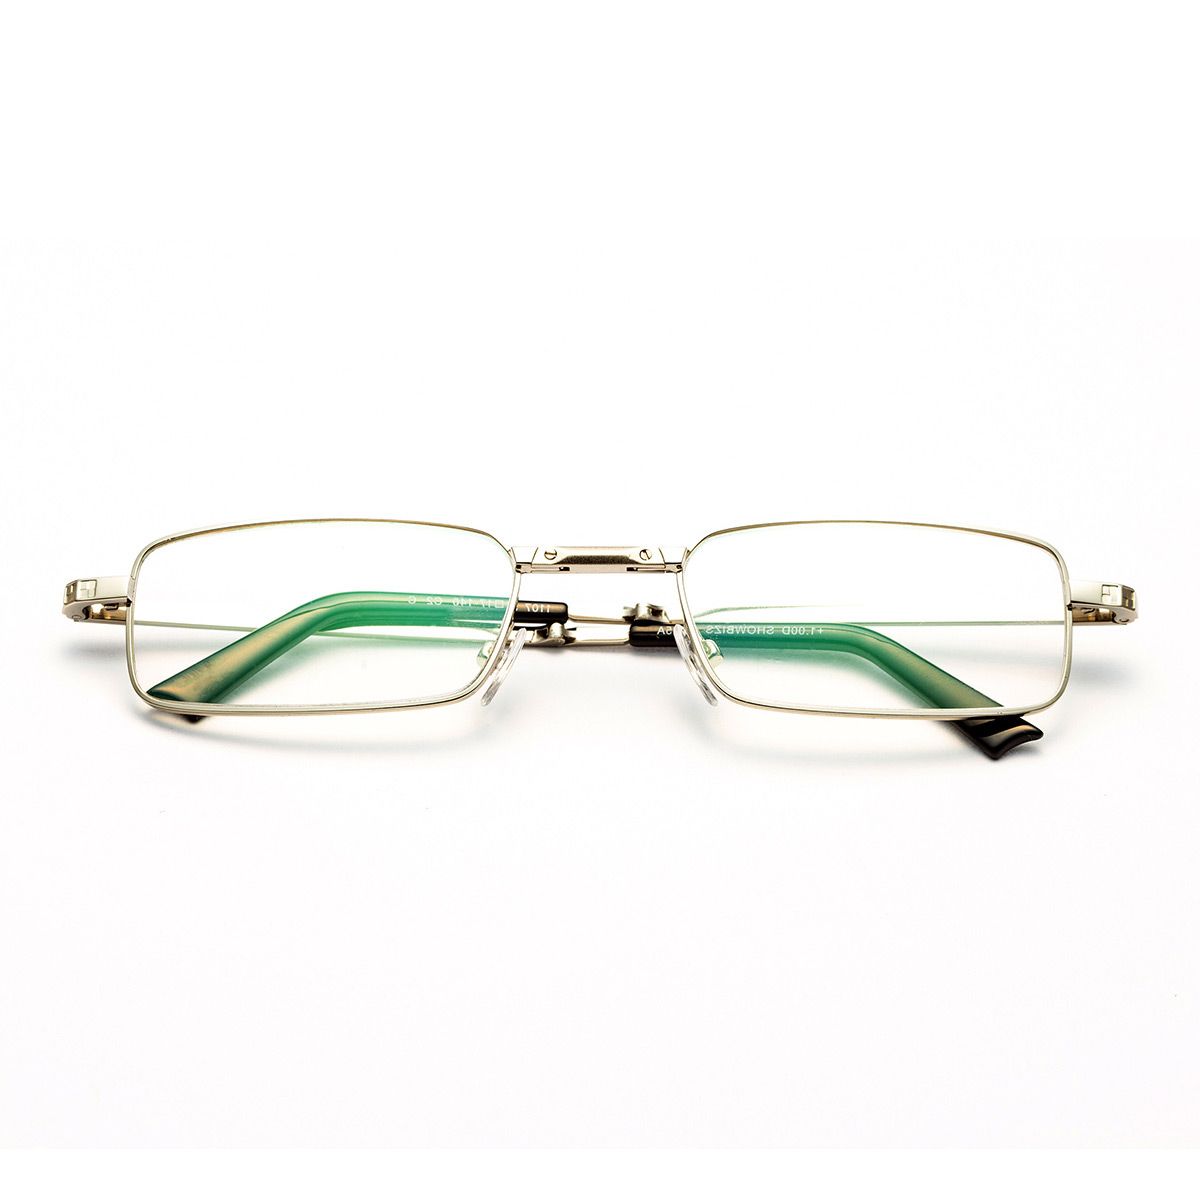 正品[宝岛隐形眼镜]宝岛隐形眼镜价格评测 宝岛